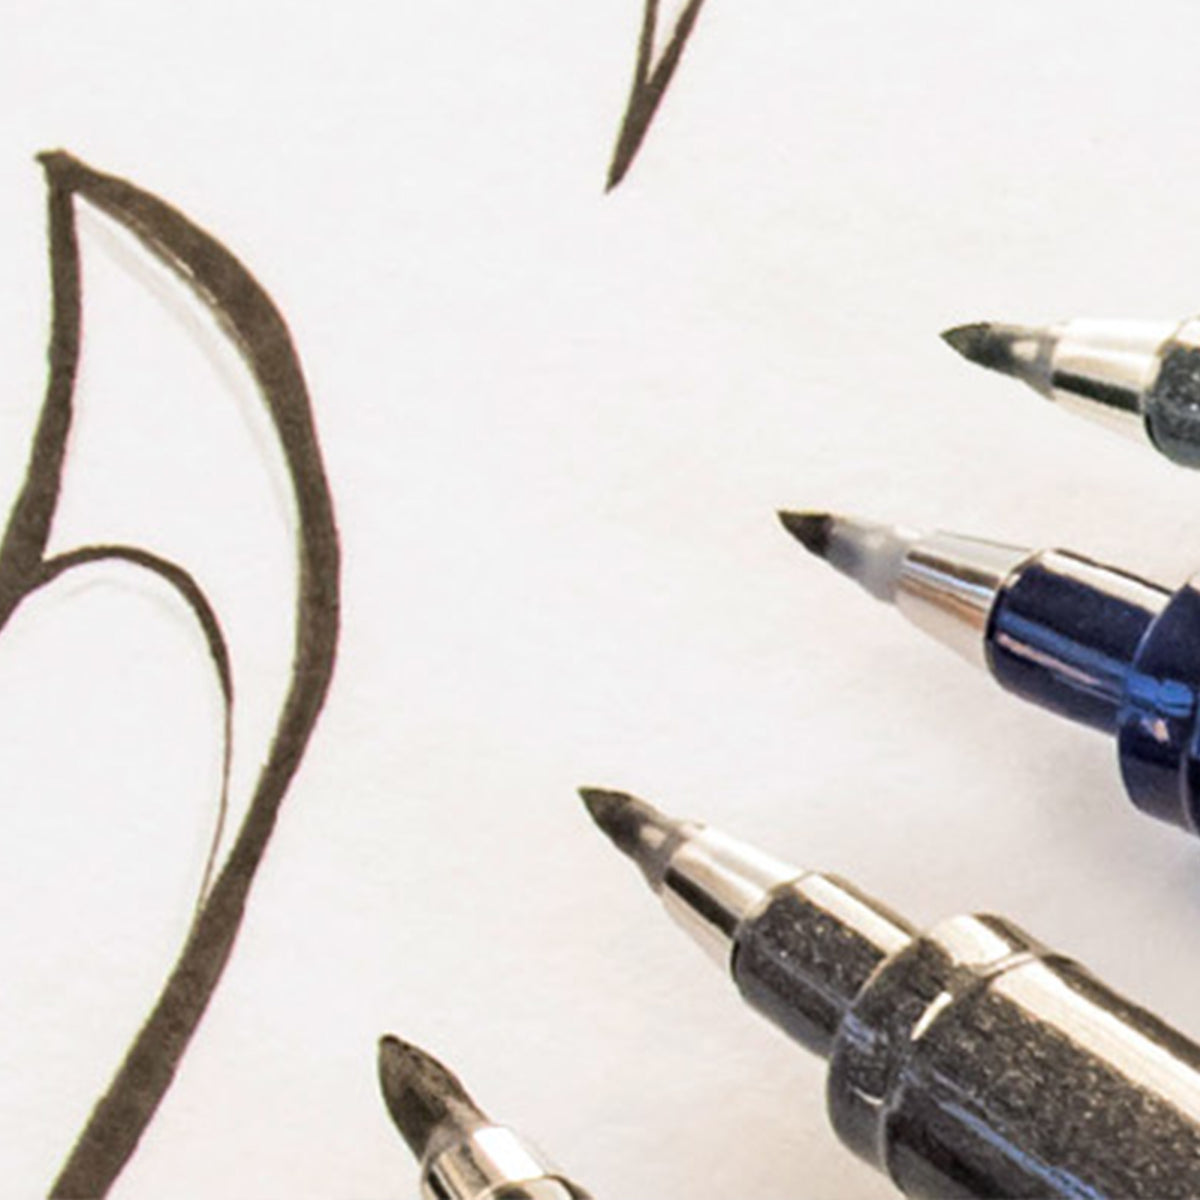 12 Pack: Zebra Pen Mildliner Brush Pen & Marker Pack, Lavender - E10A